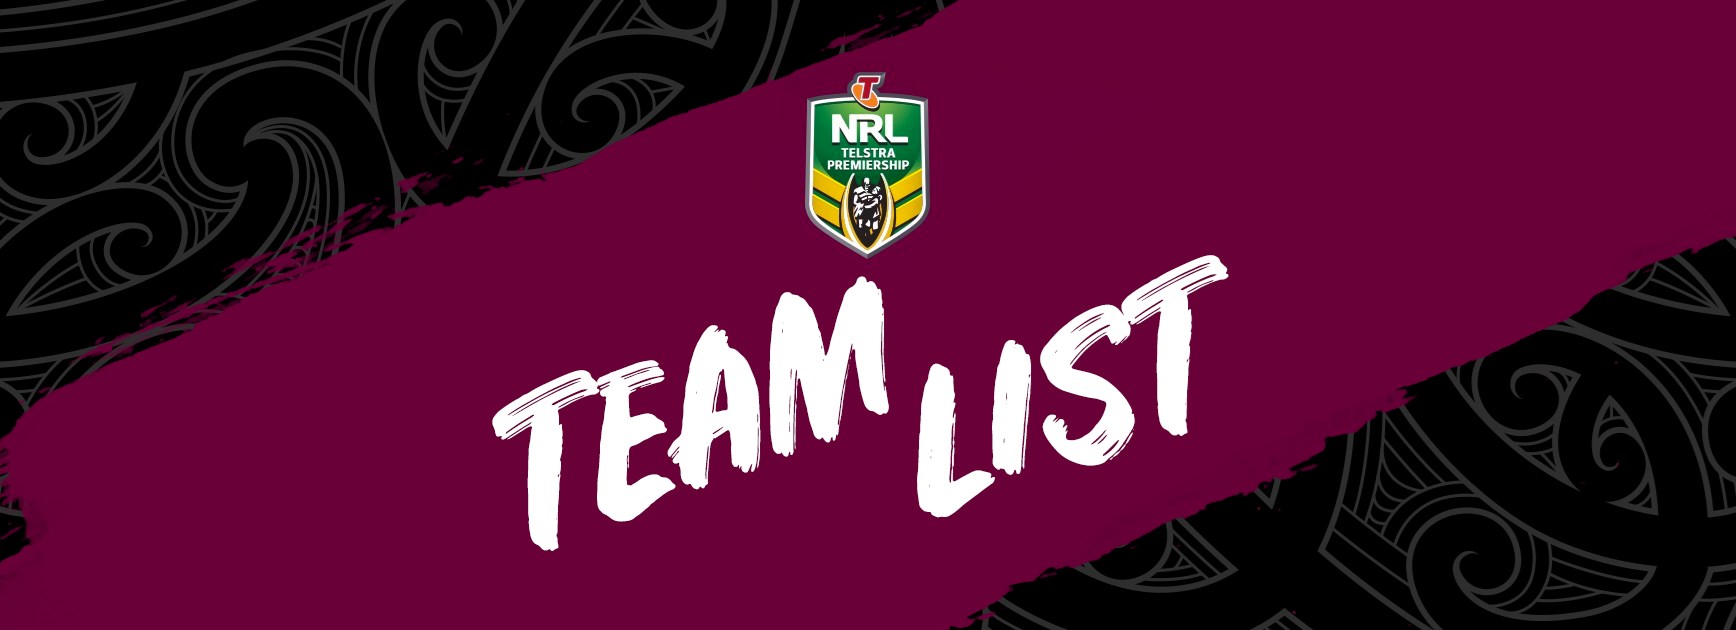 NRL Team List - Round 14